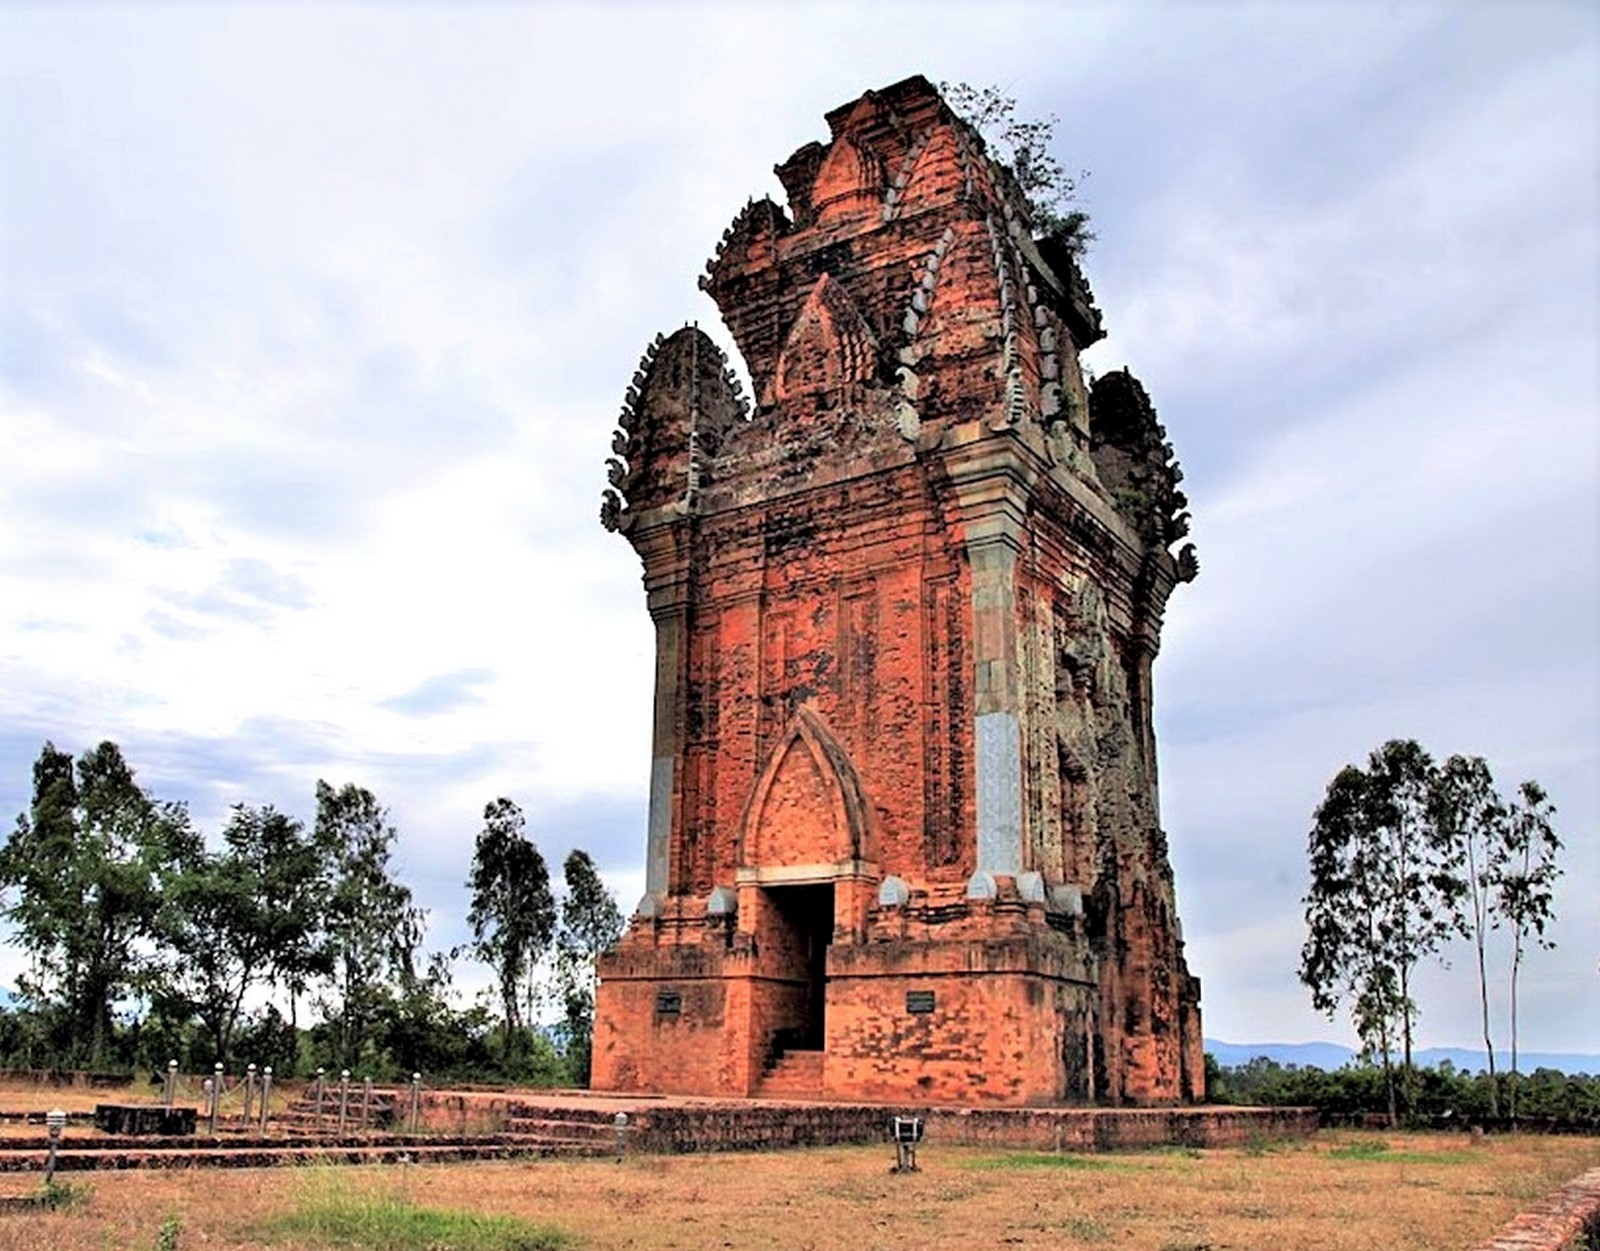 Cánh Tiên và Tháp Chăm là hai trong những địa điểm du lịch nổi tiếng của Bình Định. Đây là những nơi có kiến trúc độc đáo, kiến tạo nên vẻ đẹp cổ kính của Việt Nam. Hãy cùng khám phá những hình ảnh đầy màu sắc và trong sáng này.